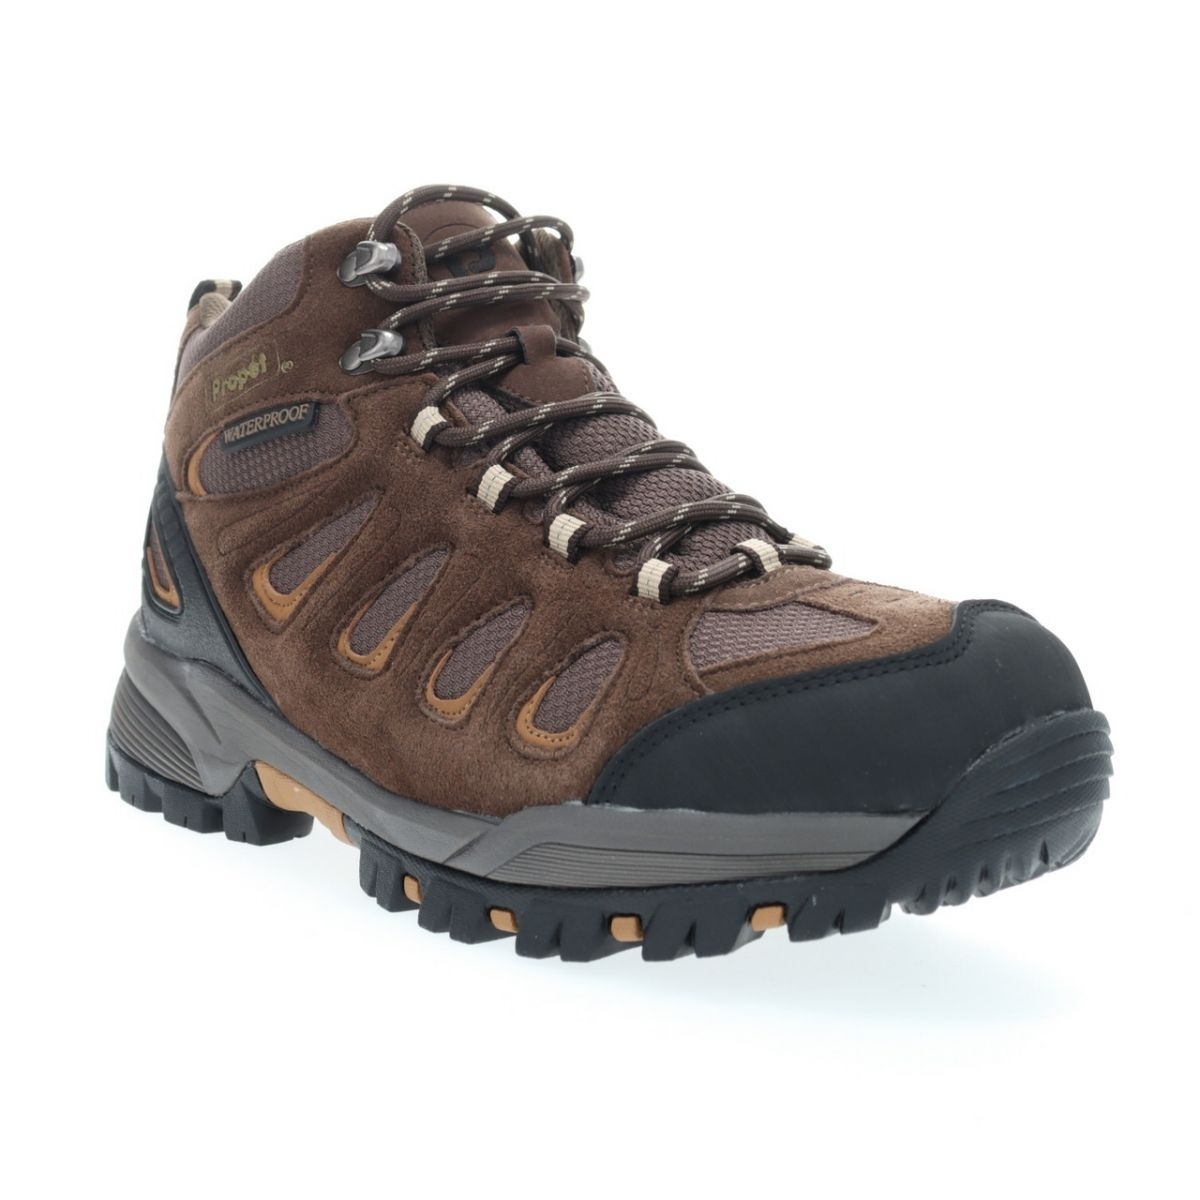 Propet Men's Ridge Walker Hiking Boot Brown - M3599BR 8 XX US Men BROWN - BROWN, 8